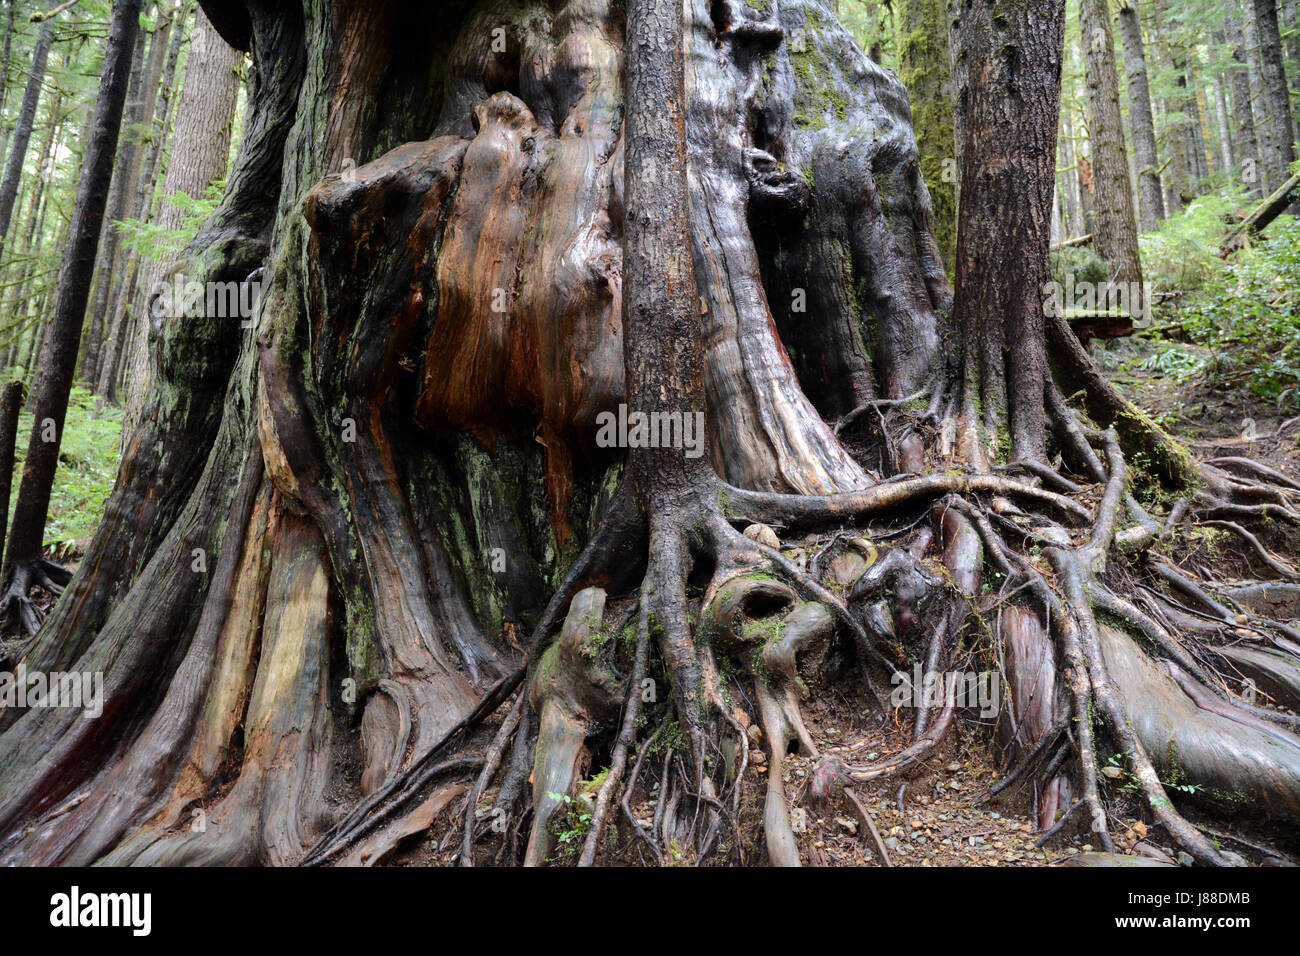 Un vieux cèdre rouge de l'Ouest à la croissance ancienne et gronte à Avatar Grove, une forêt tropicale de l'île de Vancouver, en Colombie-Britannique, au Canada. Banque D'Images